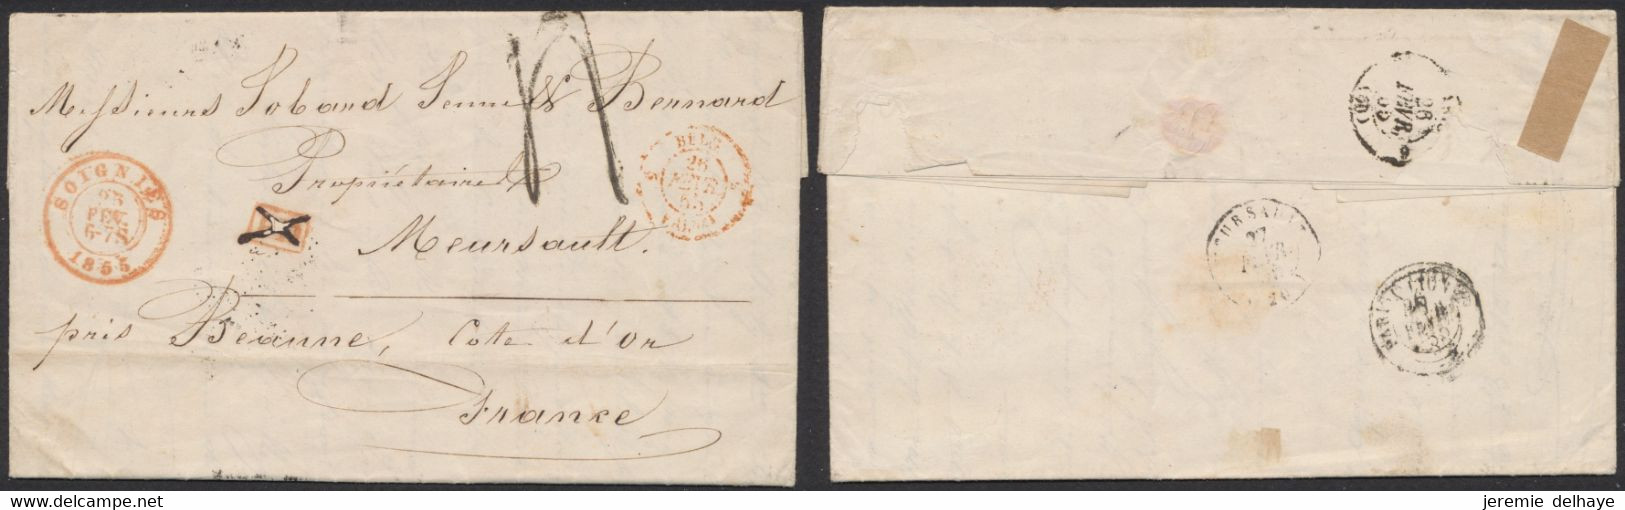 LAC Non Affranchie + Cachet Dateur "Soignies" (1855) Griffe PD Annulé à La Plume, Port 4 Décimes > Meursault (France) - Landpost (Ruralpost)